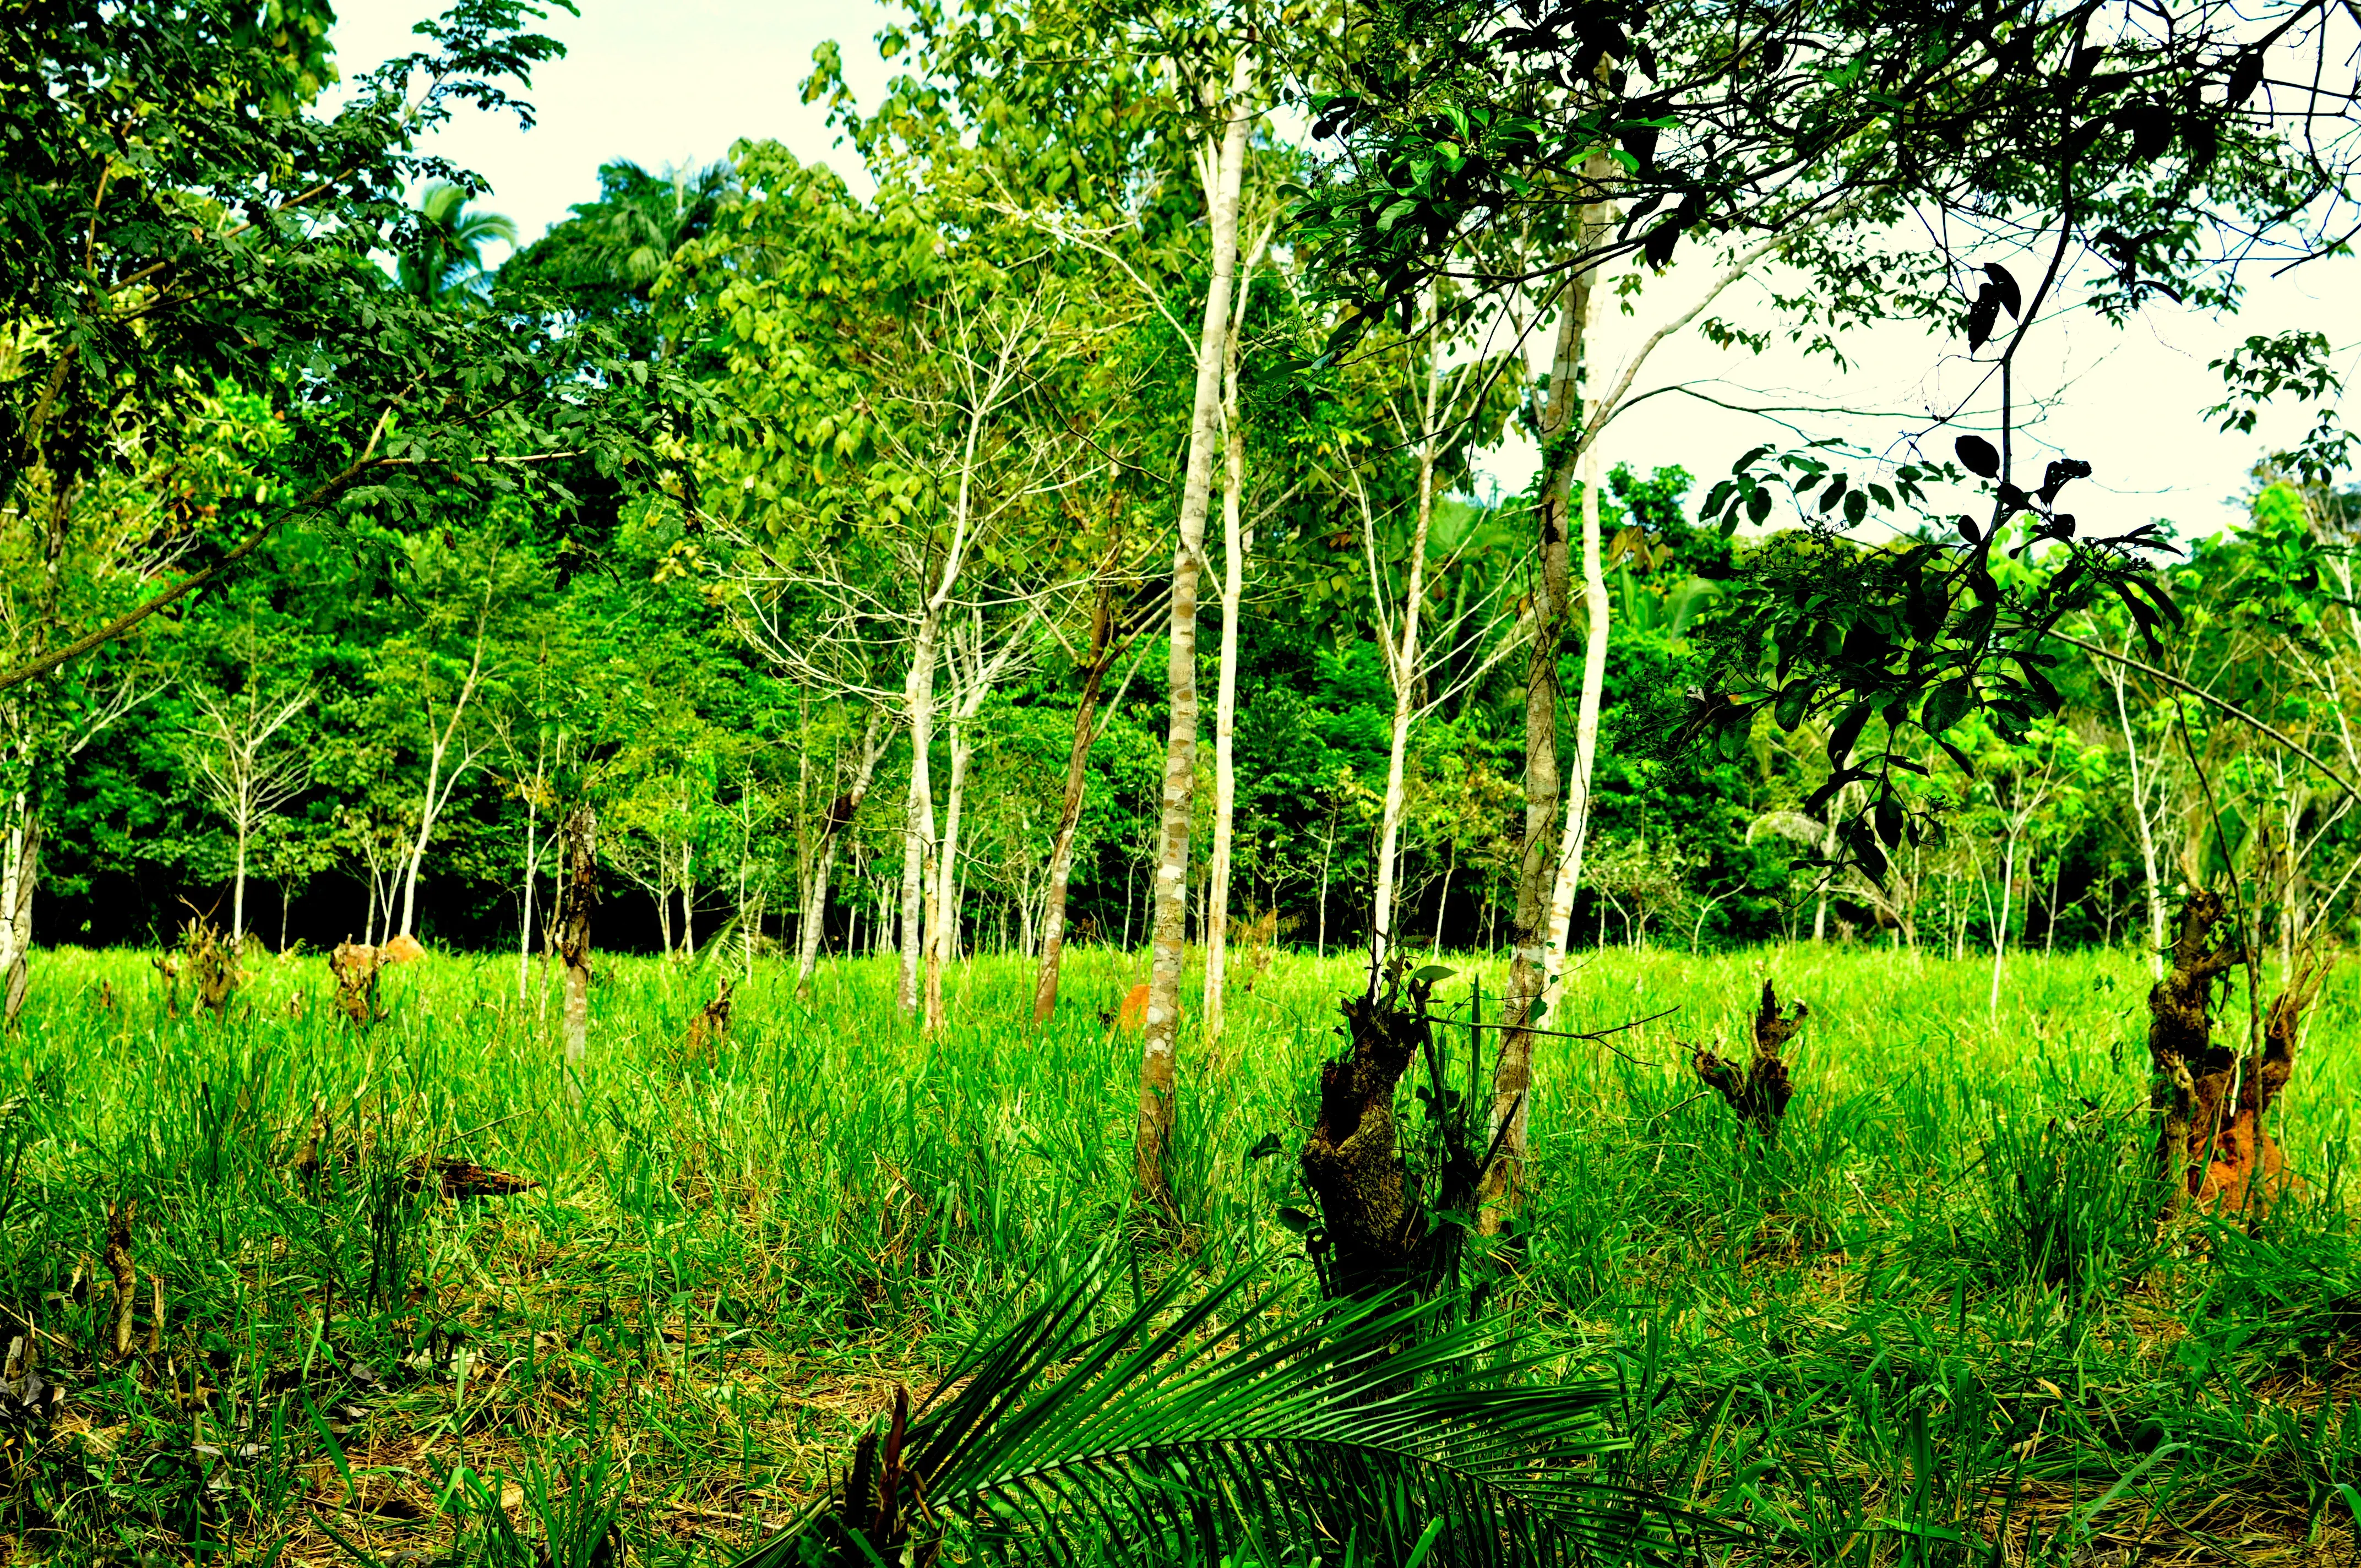 Forest Governance Assessment